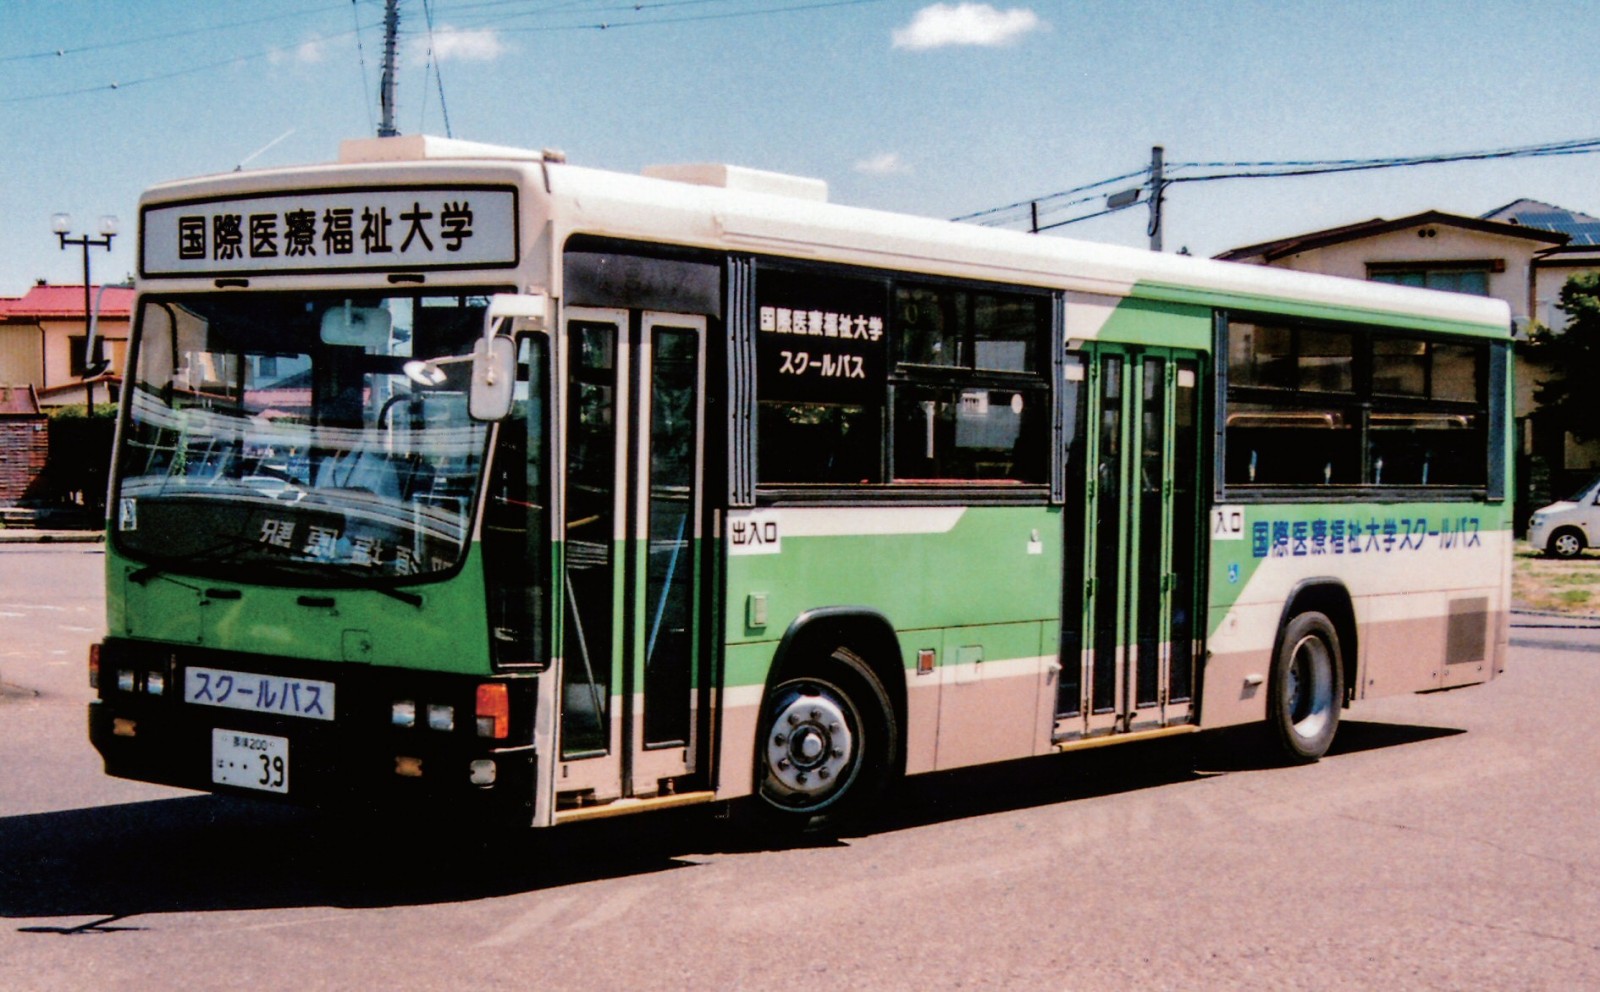 大田原市 康栄観光バス いすゞ Kc Lv280l 都営バス資料館